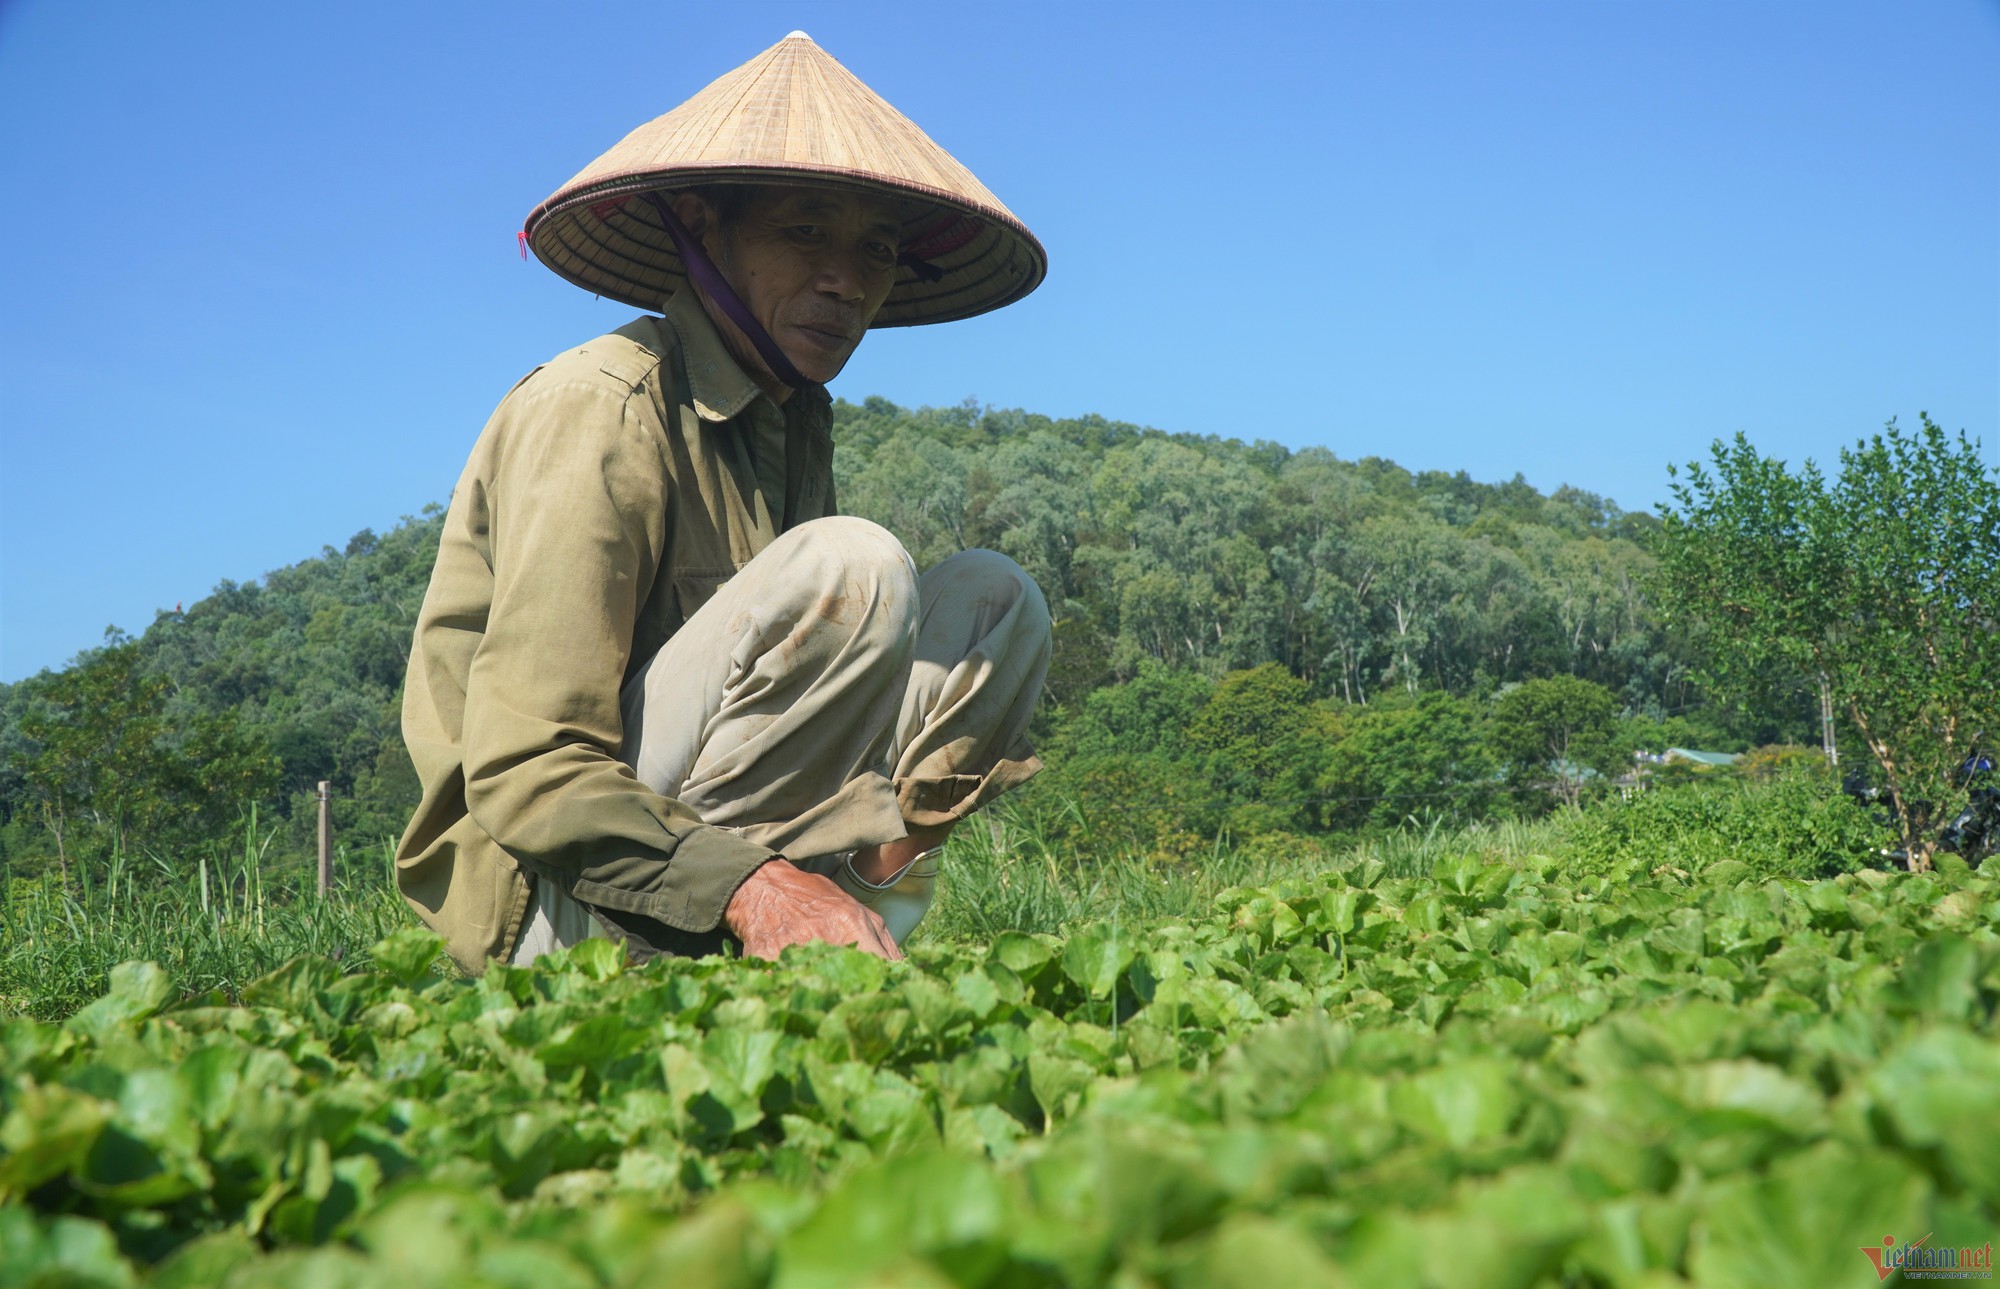 Trồng rau má cổ, lão nông ở Thanh Hóa thu 400 triệu đồng mỗi năm - Ảnh 1.